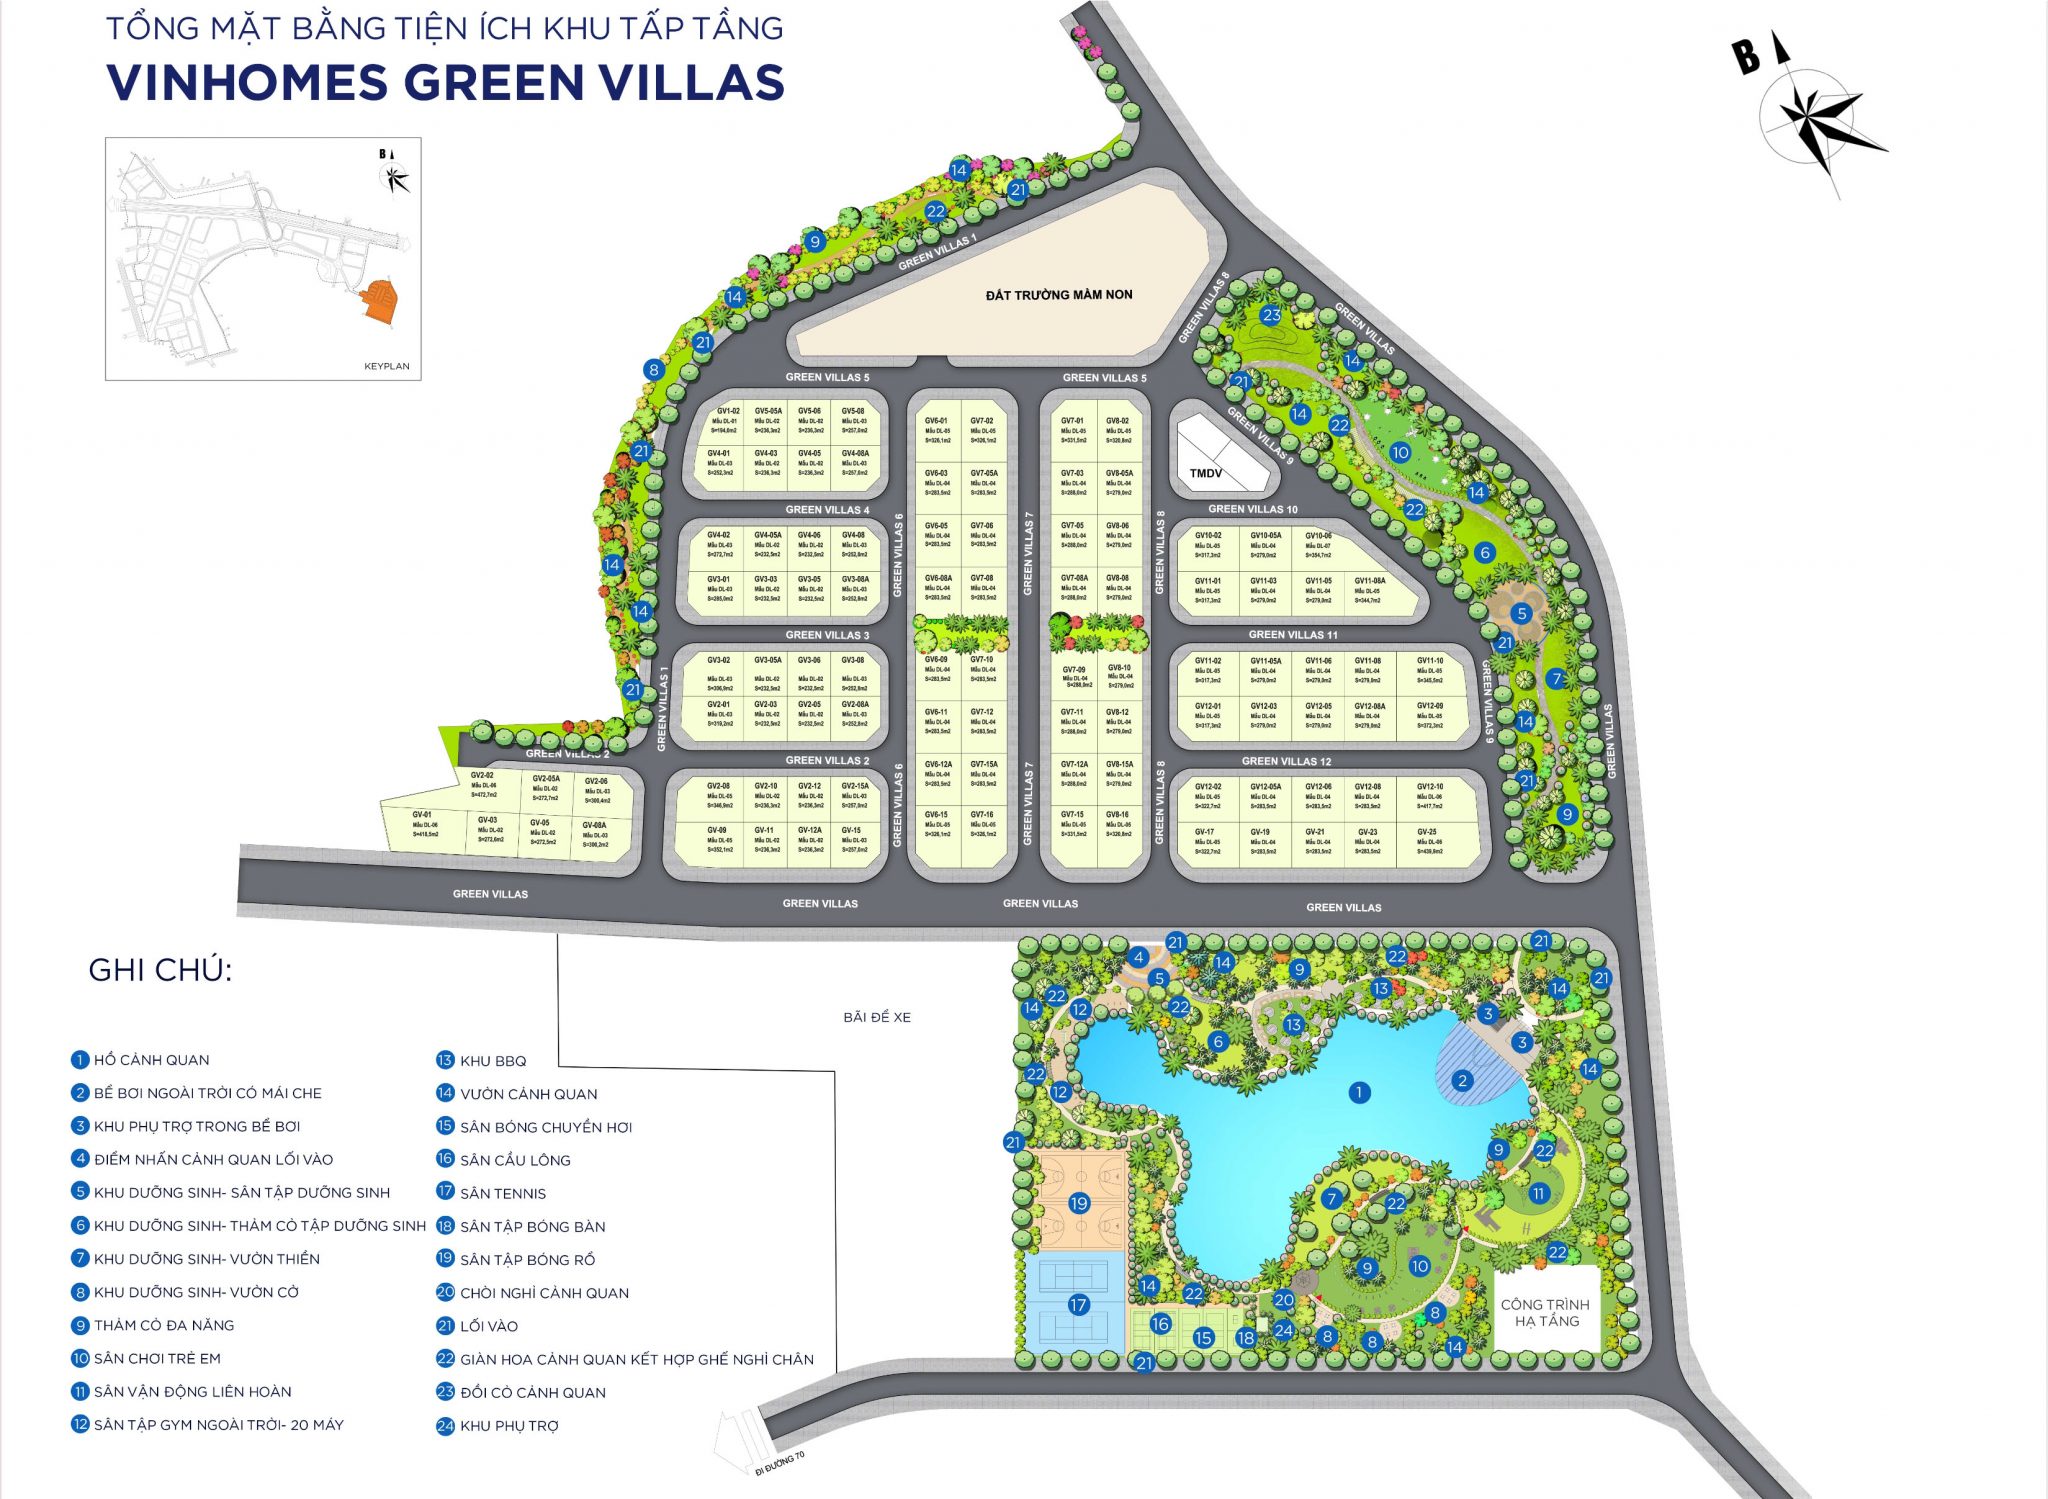 tong-mat-bang-vinhomes-green-villas